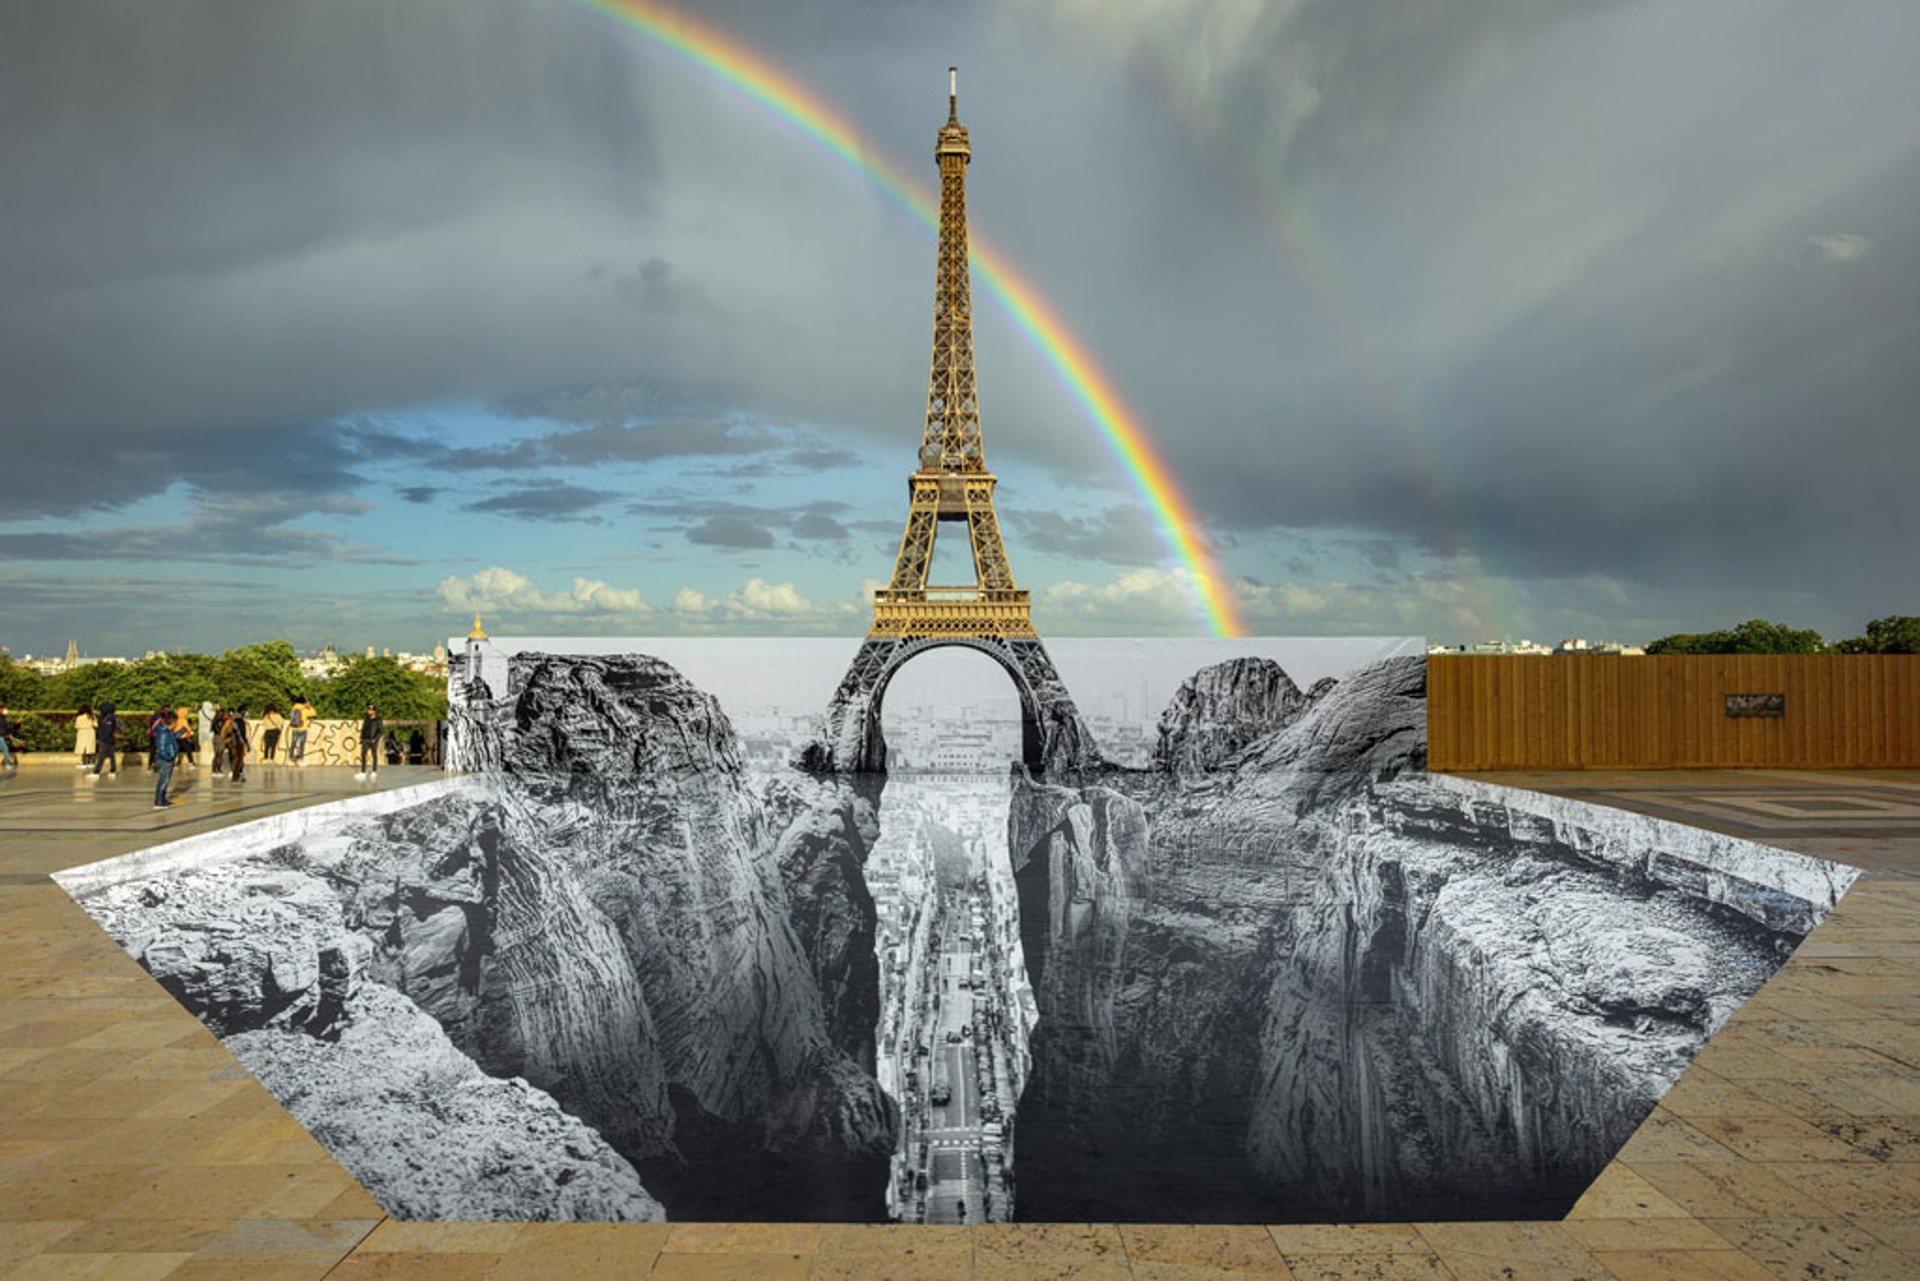 Trompe l'oeil, Les Falaises du Trocadéro, 21 mai 2021, 20h03, Paris, France, 2021 by JR